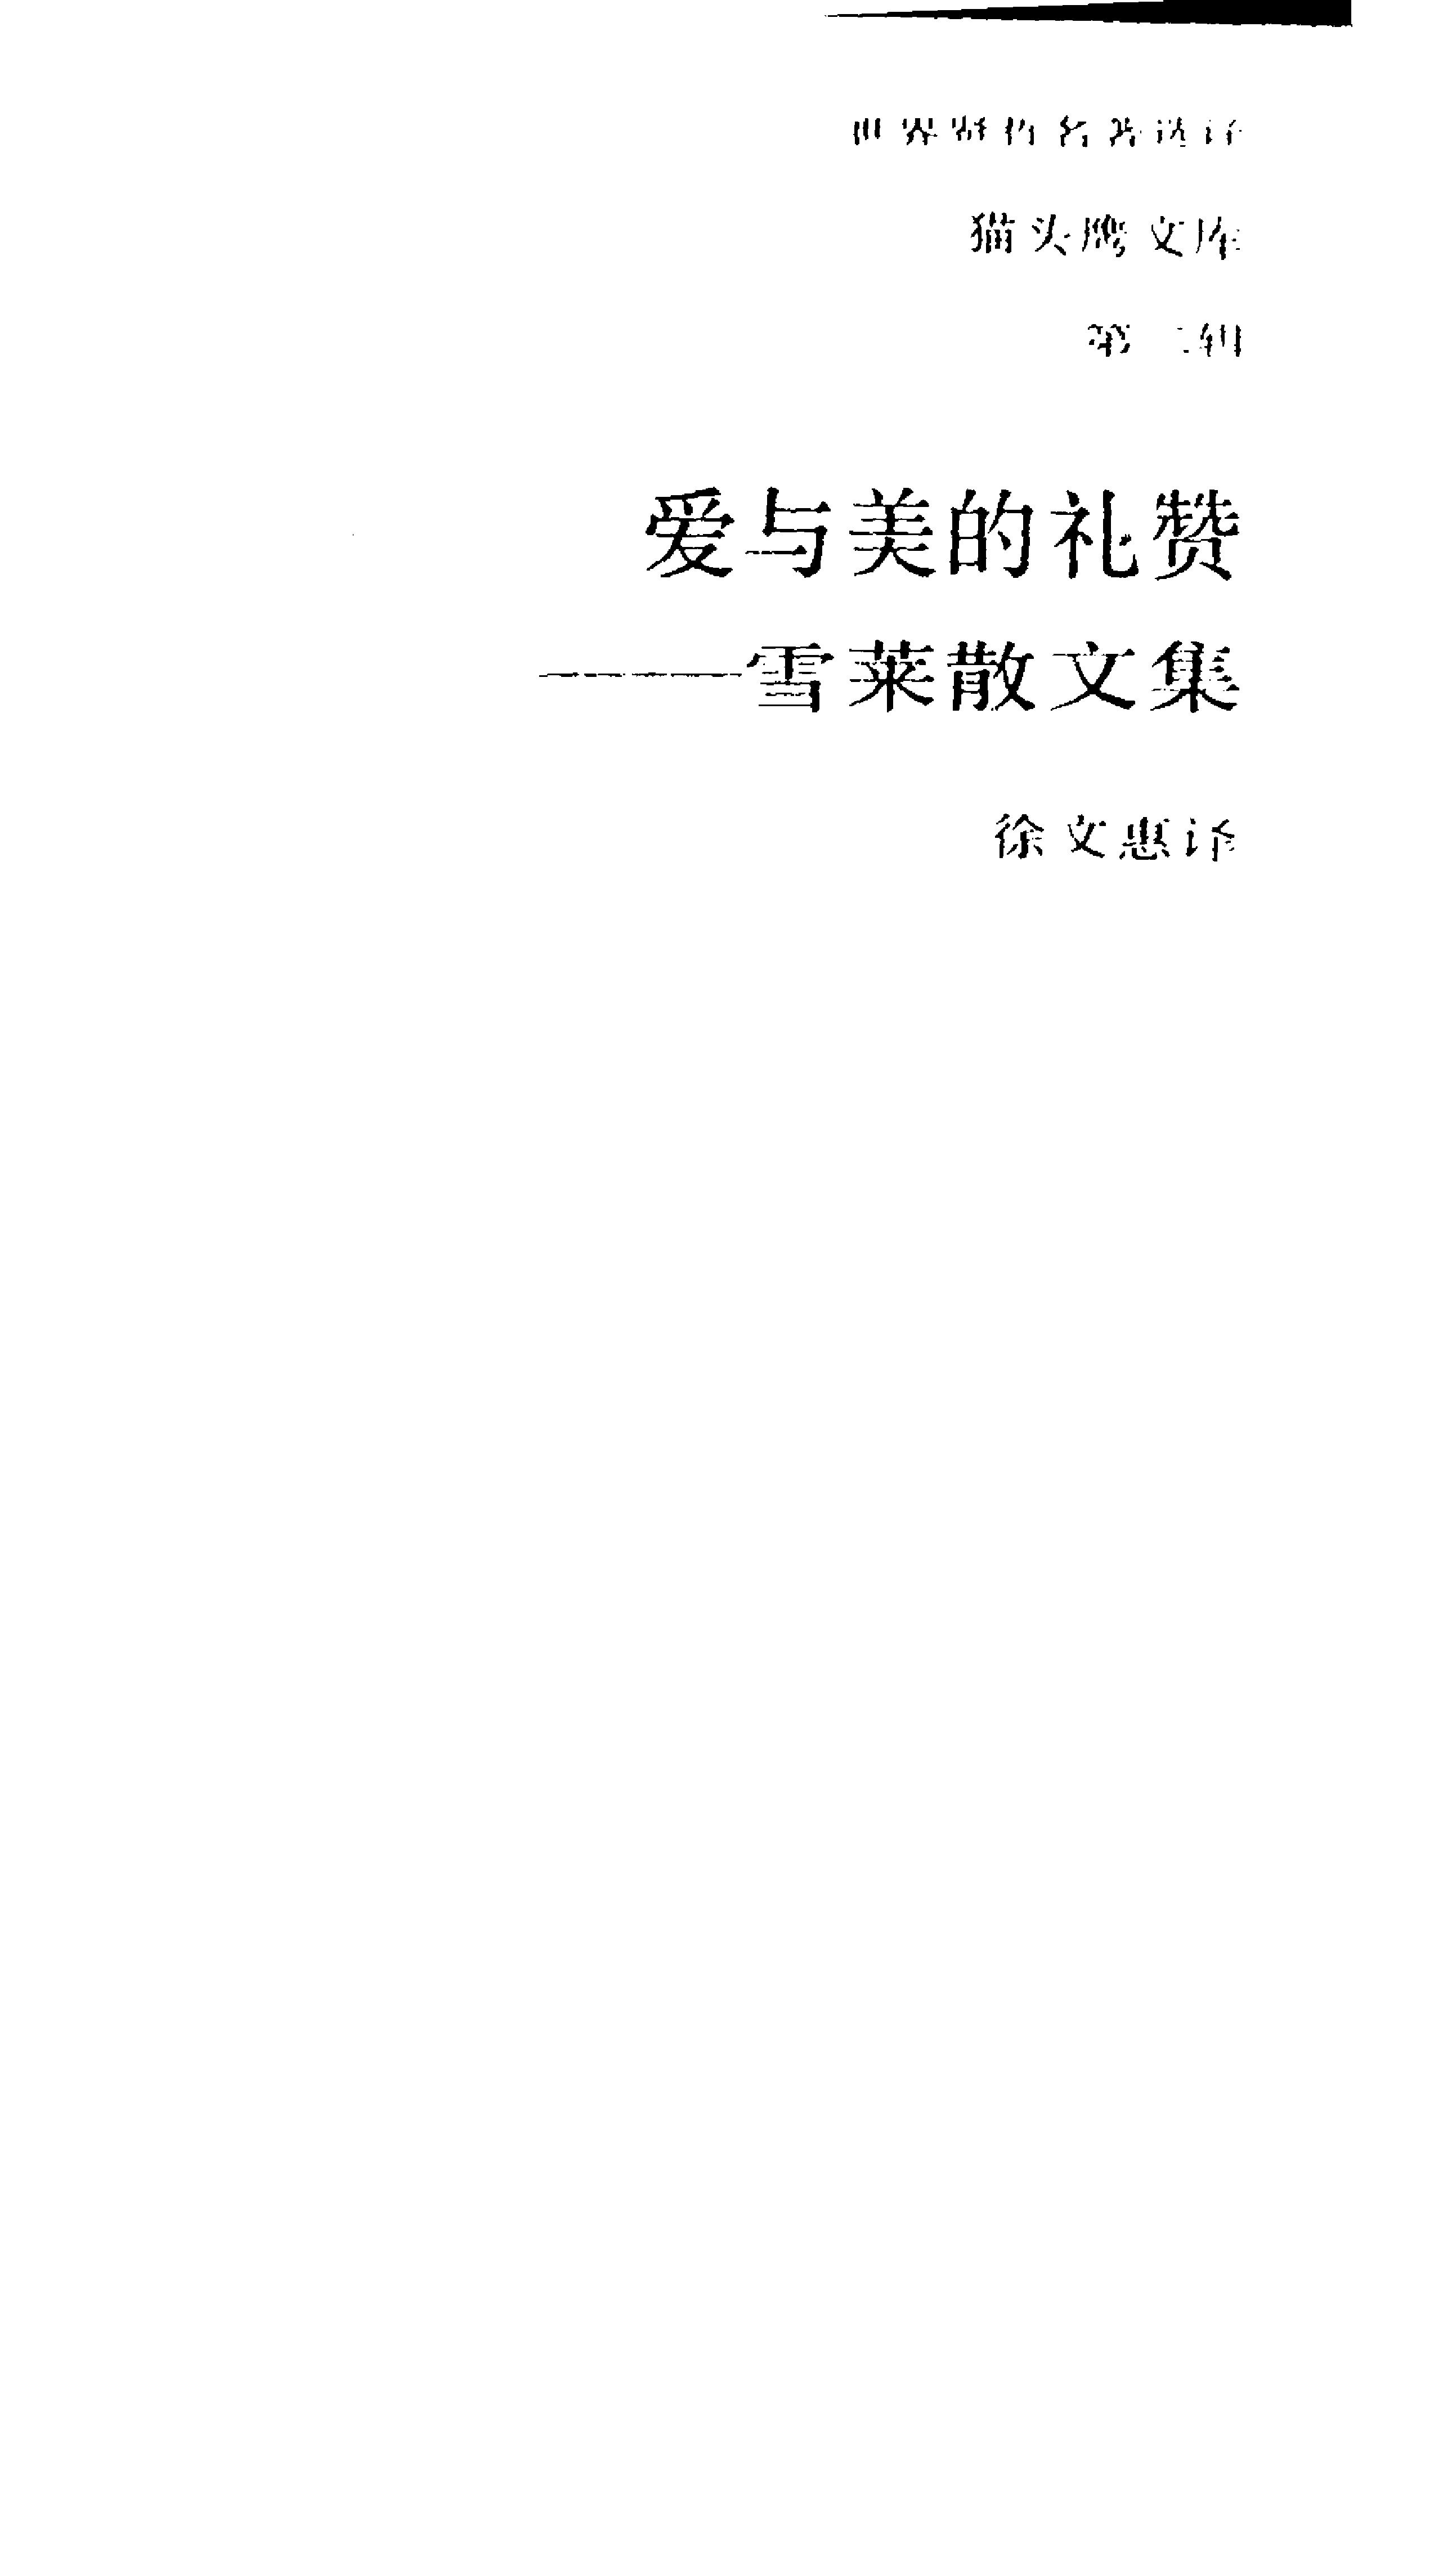 爱与美的礼赞-雪莱散文集.徐文惠译.三联书店(1989)